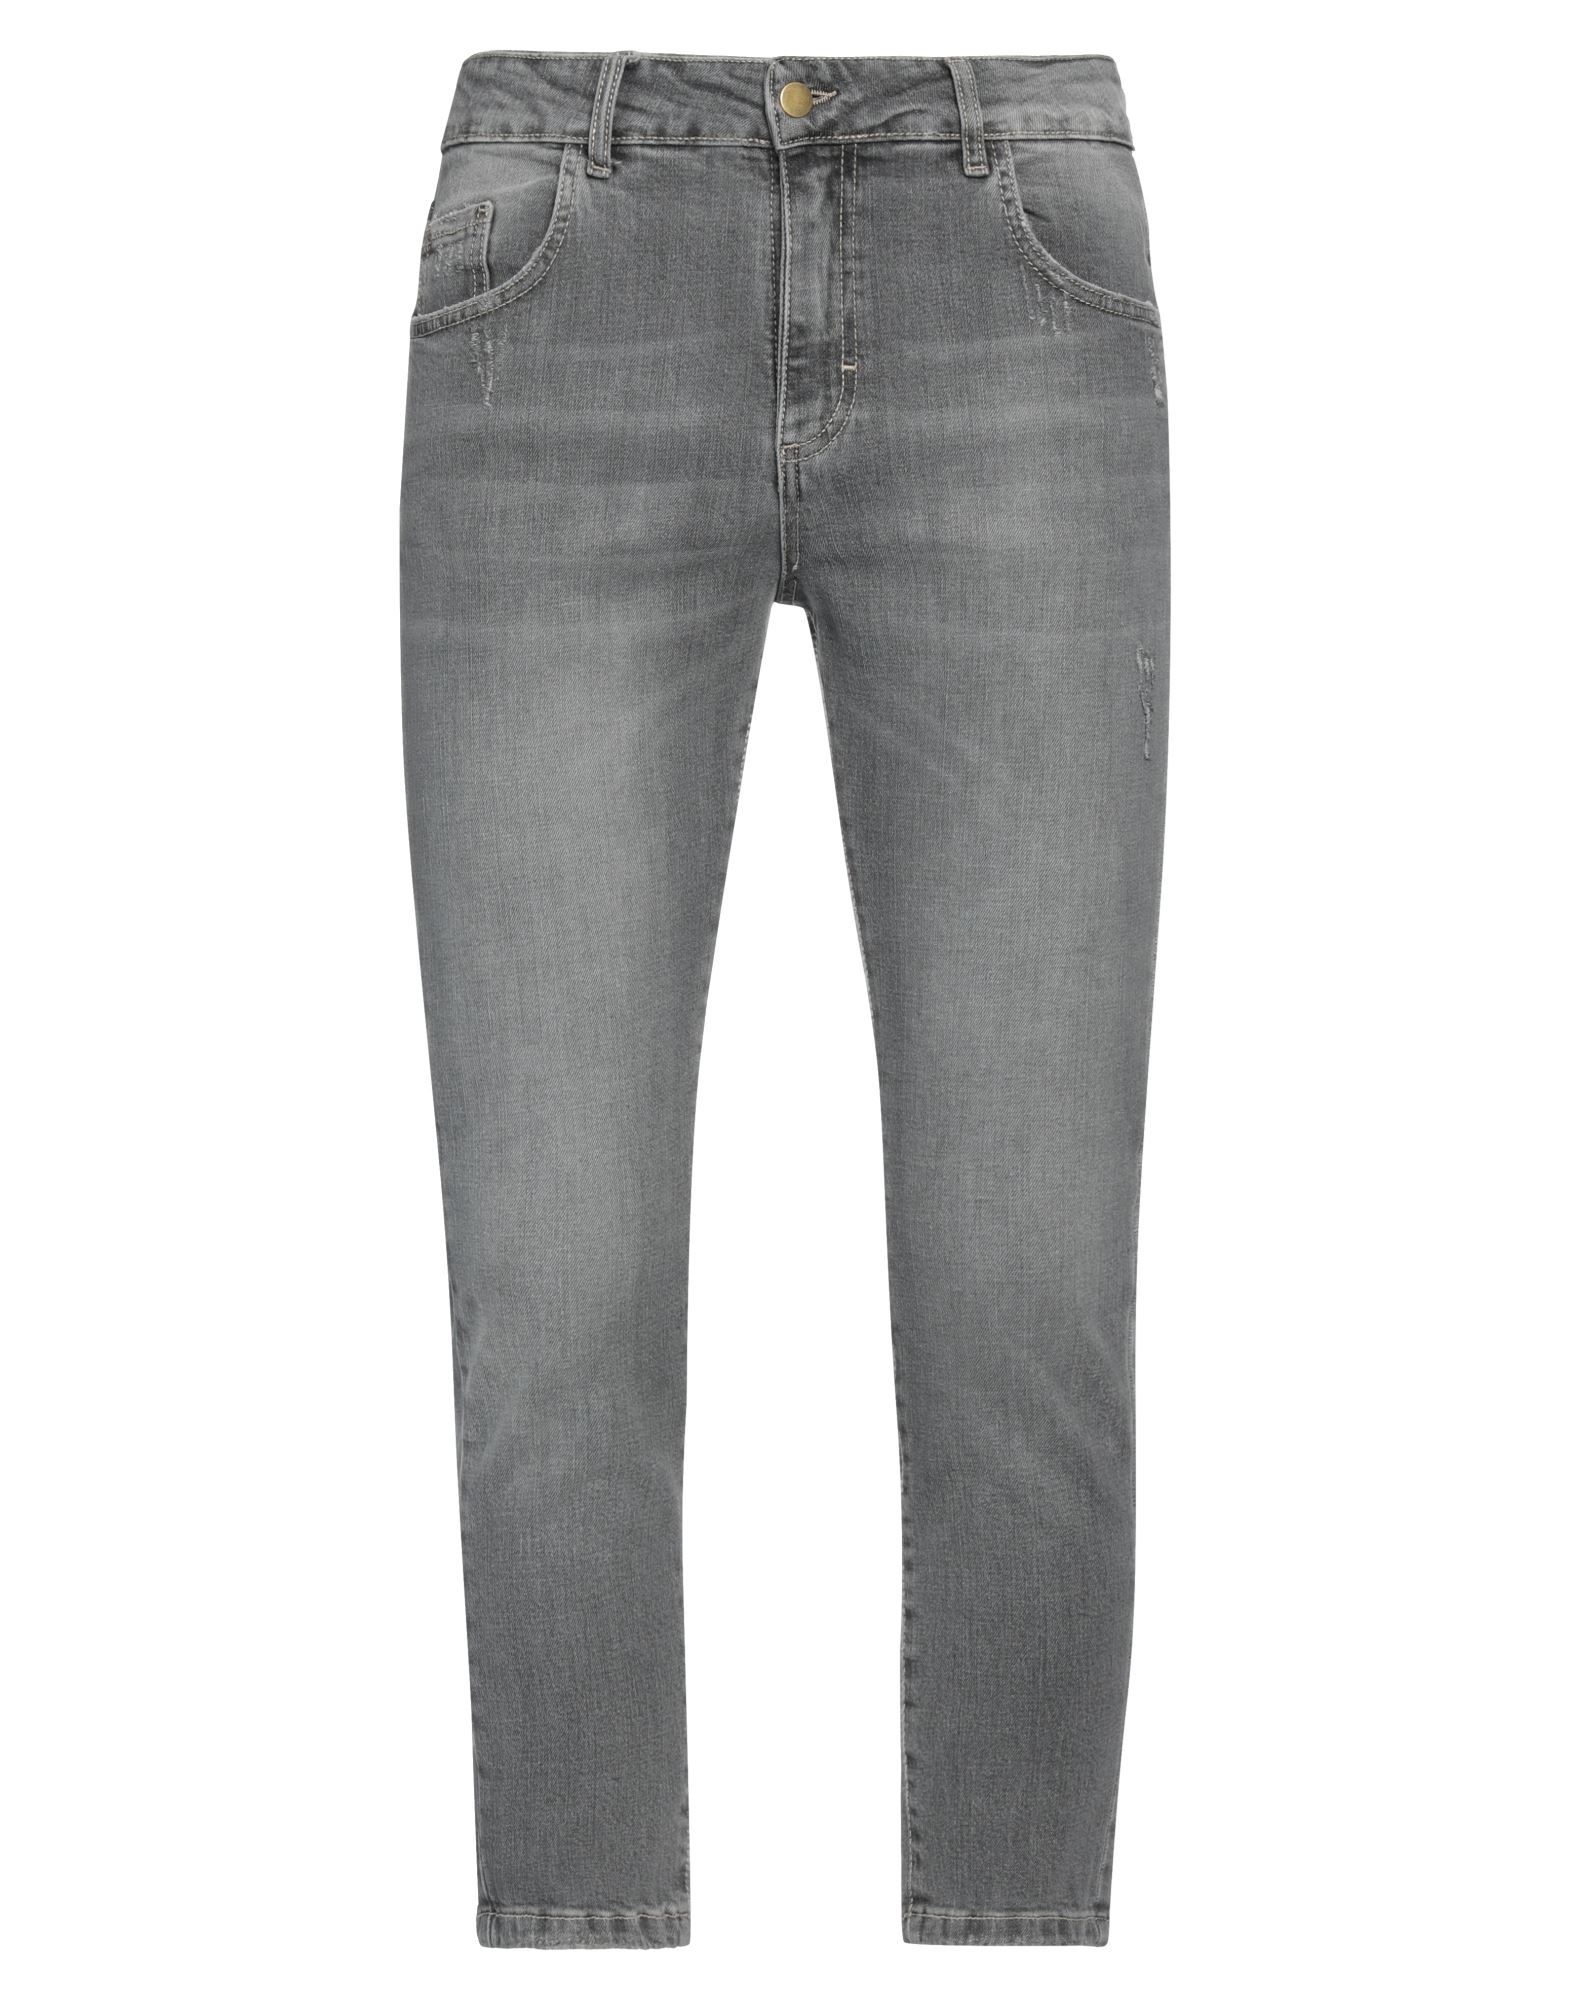 Beaucoup .., Man Jeans Grey Size 30 Textile Fibers